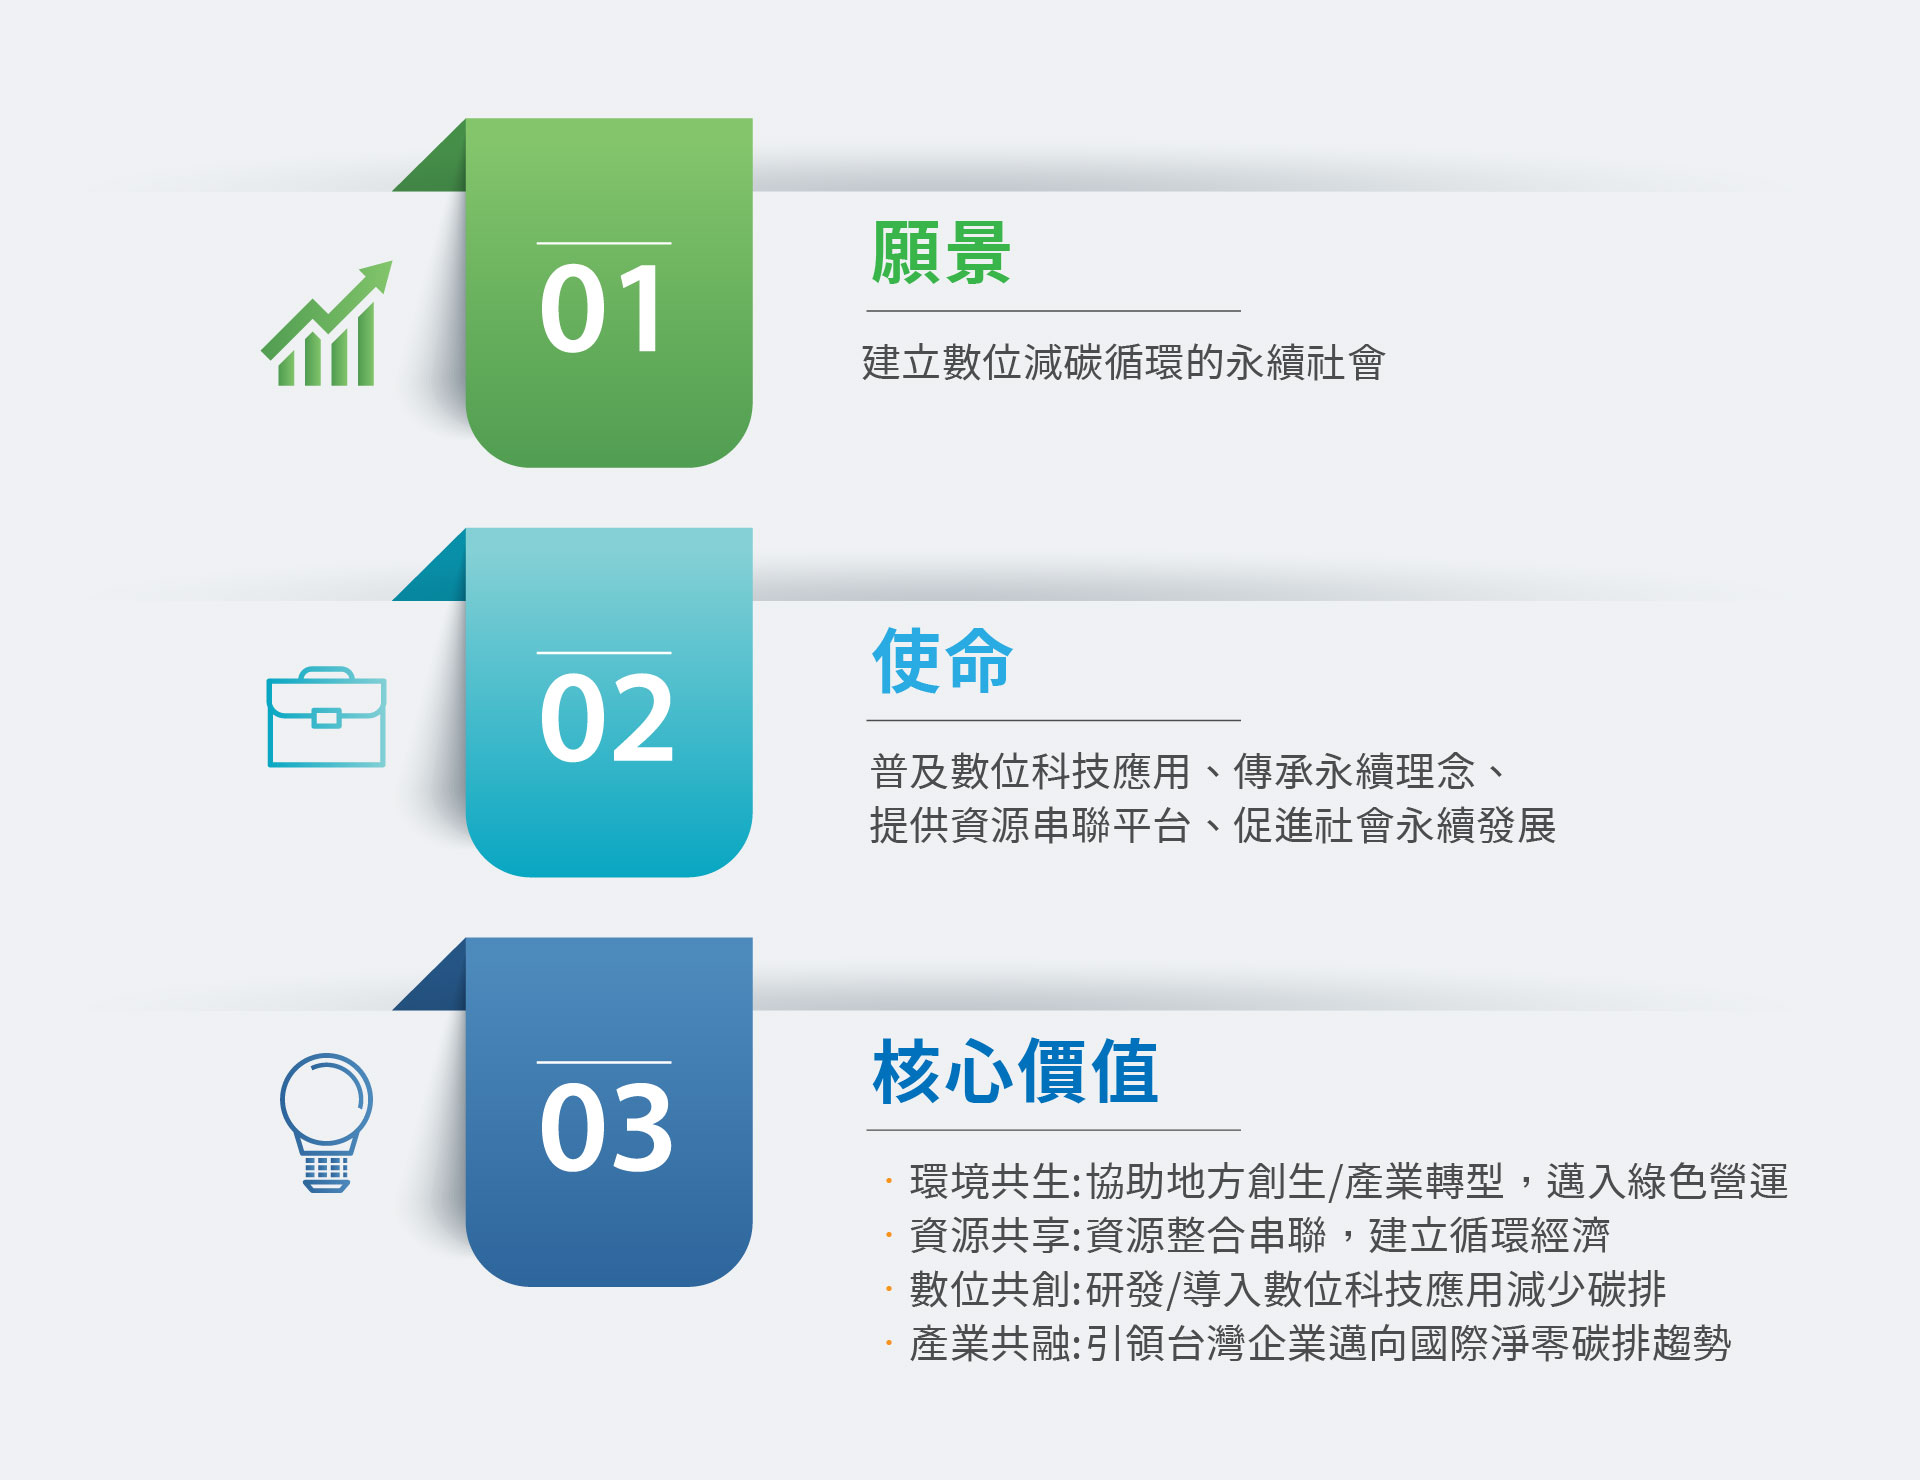 台灣未來願景數位聯盟的願景使命